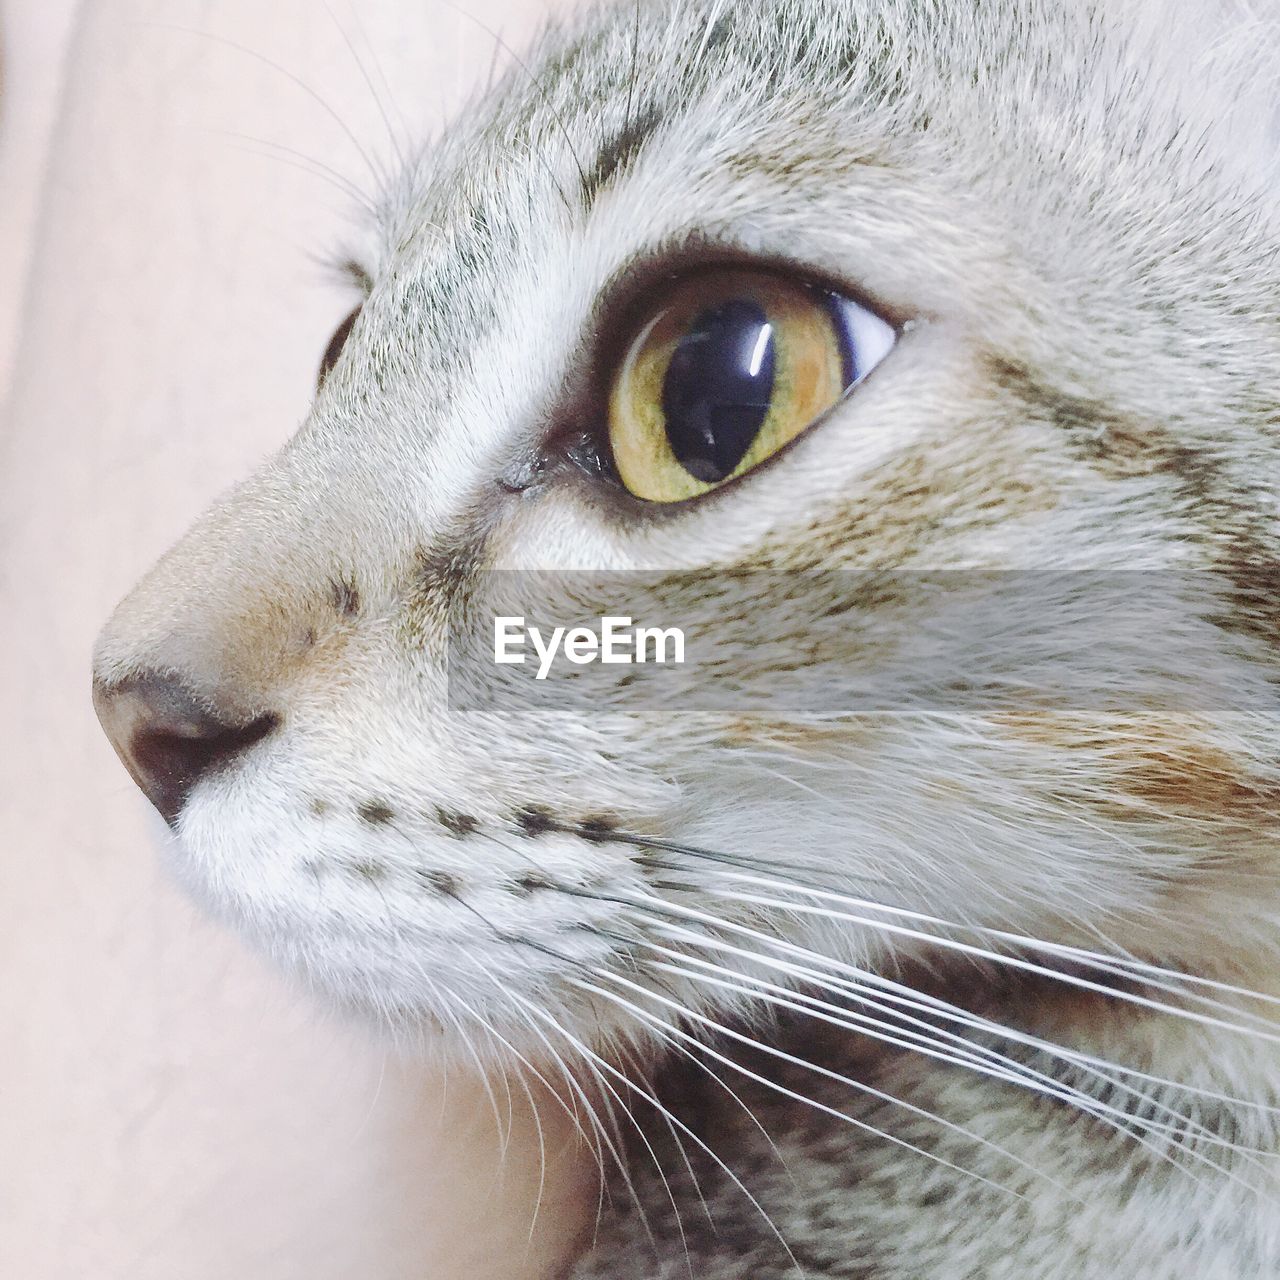 Kitten close up shot